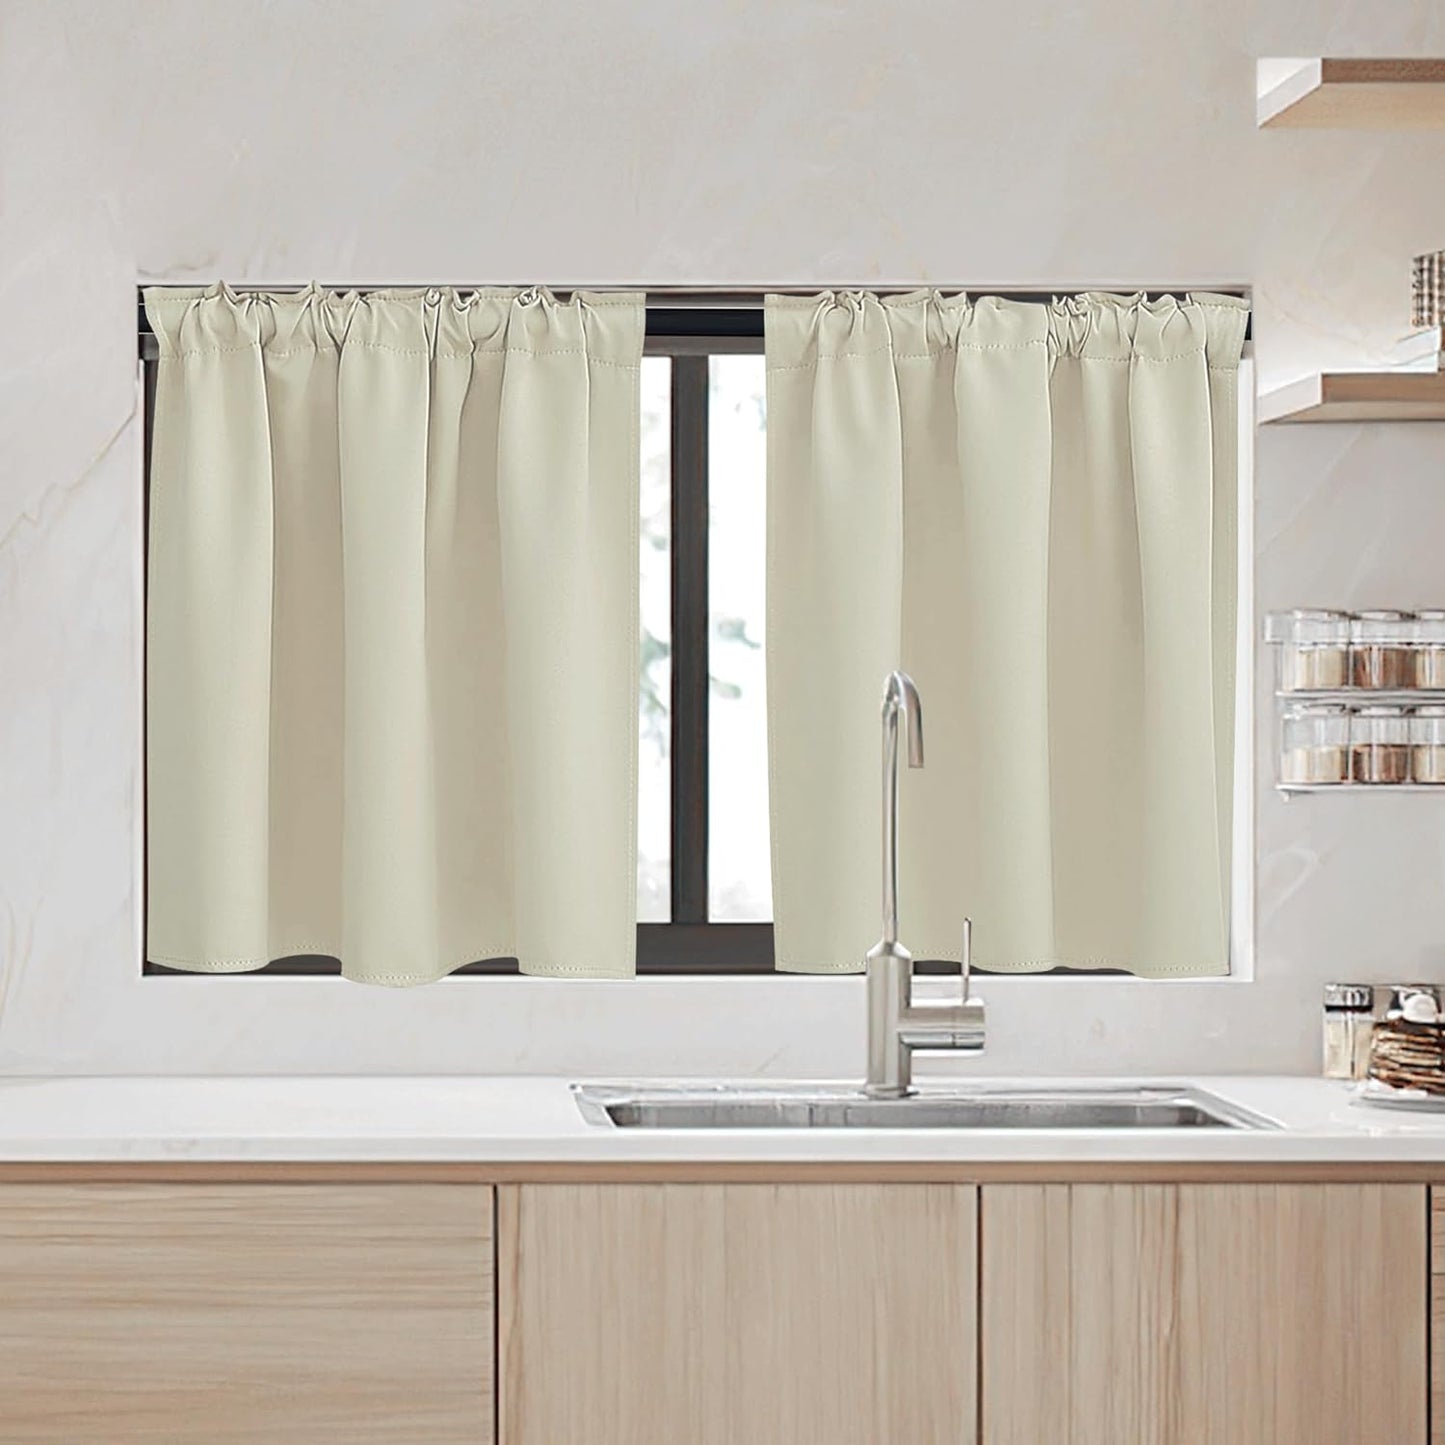 Kitchen Window Curtains - W 34 x L 36 inches, 2 Panels, Biscotti Beige